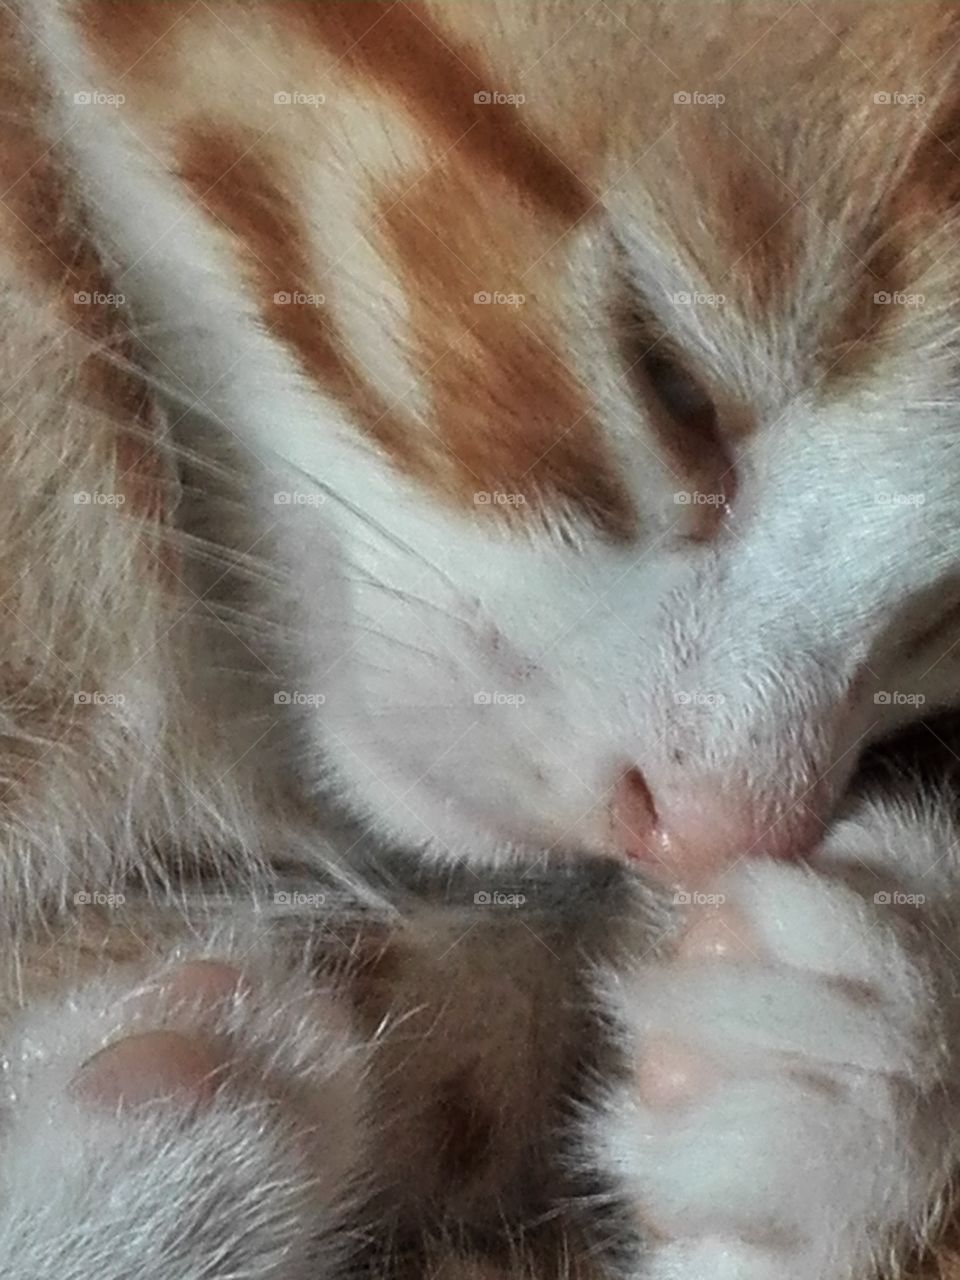 Napping kitten